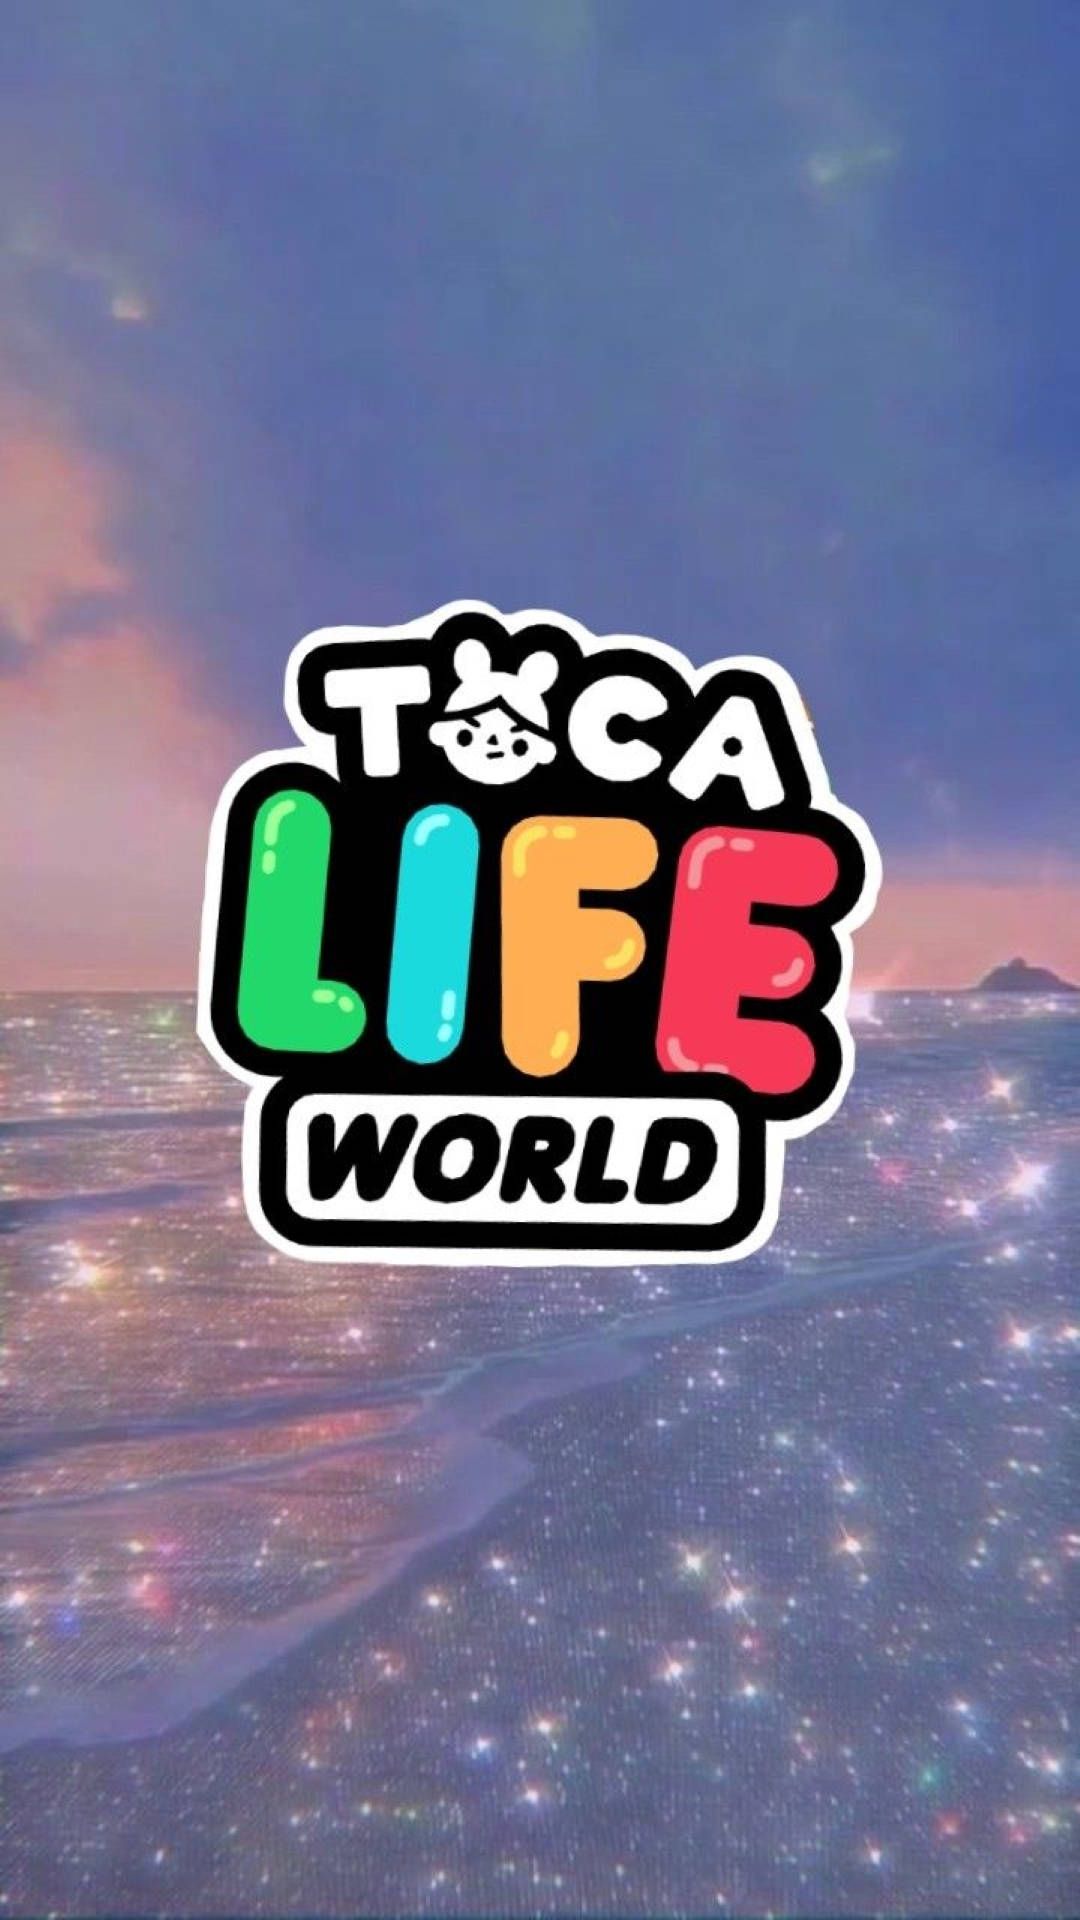 The logo for toca life world - Toca Boca